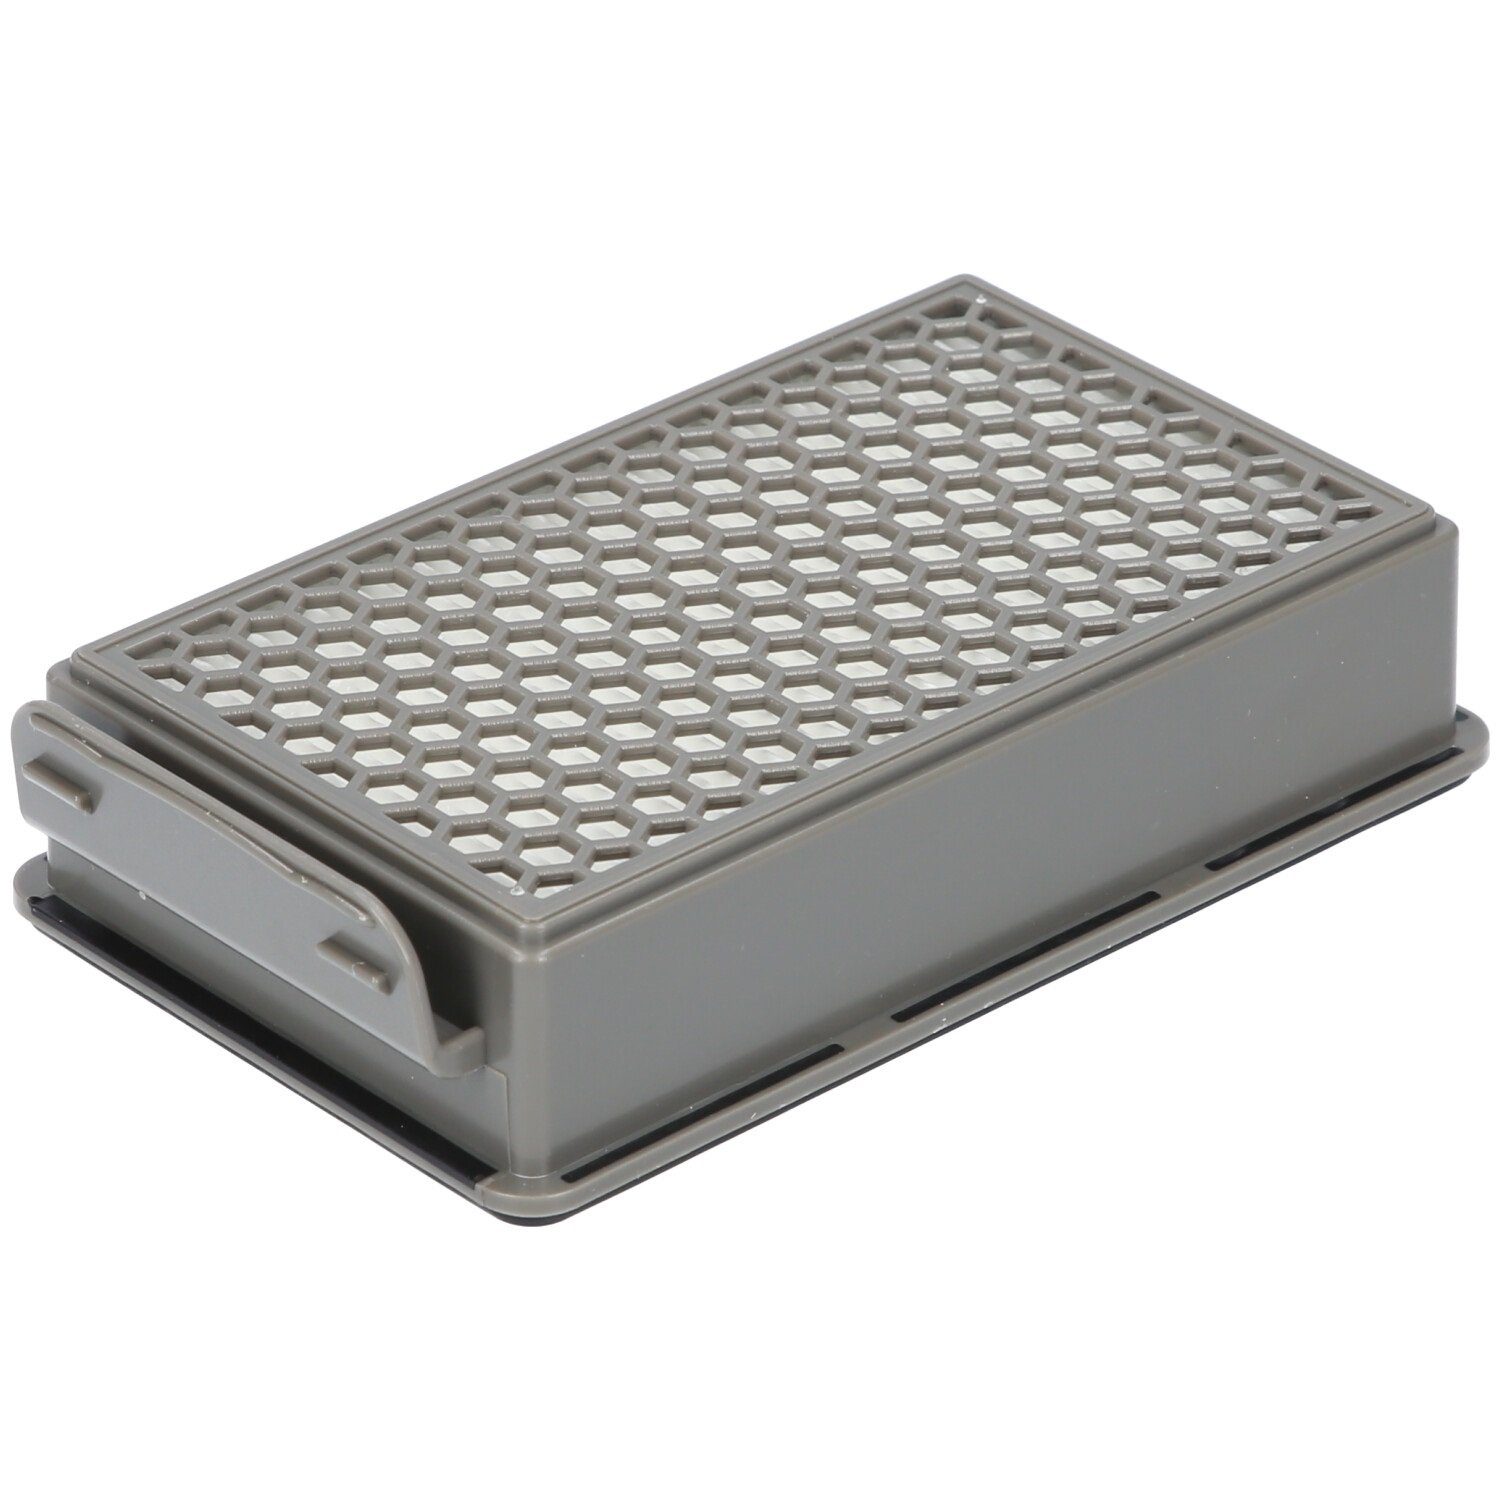 1x MO3953PA Alternativ für McFilter / Rundfilter, / 1x Filter-Set für MO3967PA MO3951PA MO3969PA, MO3985PA, ZR005901 Filterkassette, Moulinex geeignet /